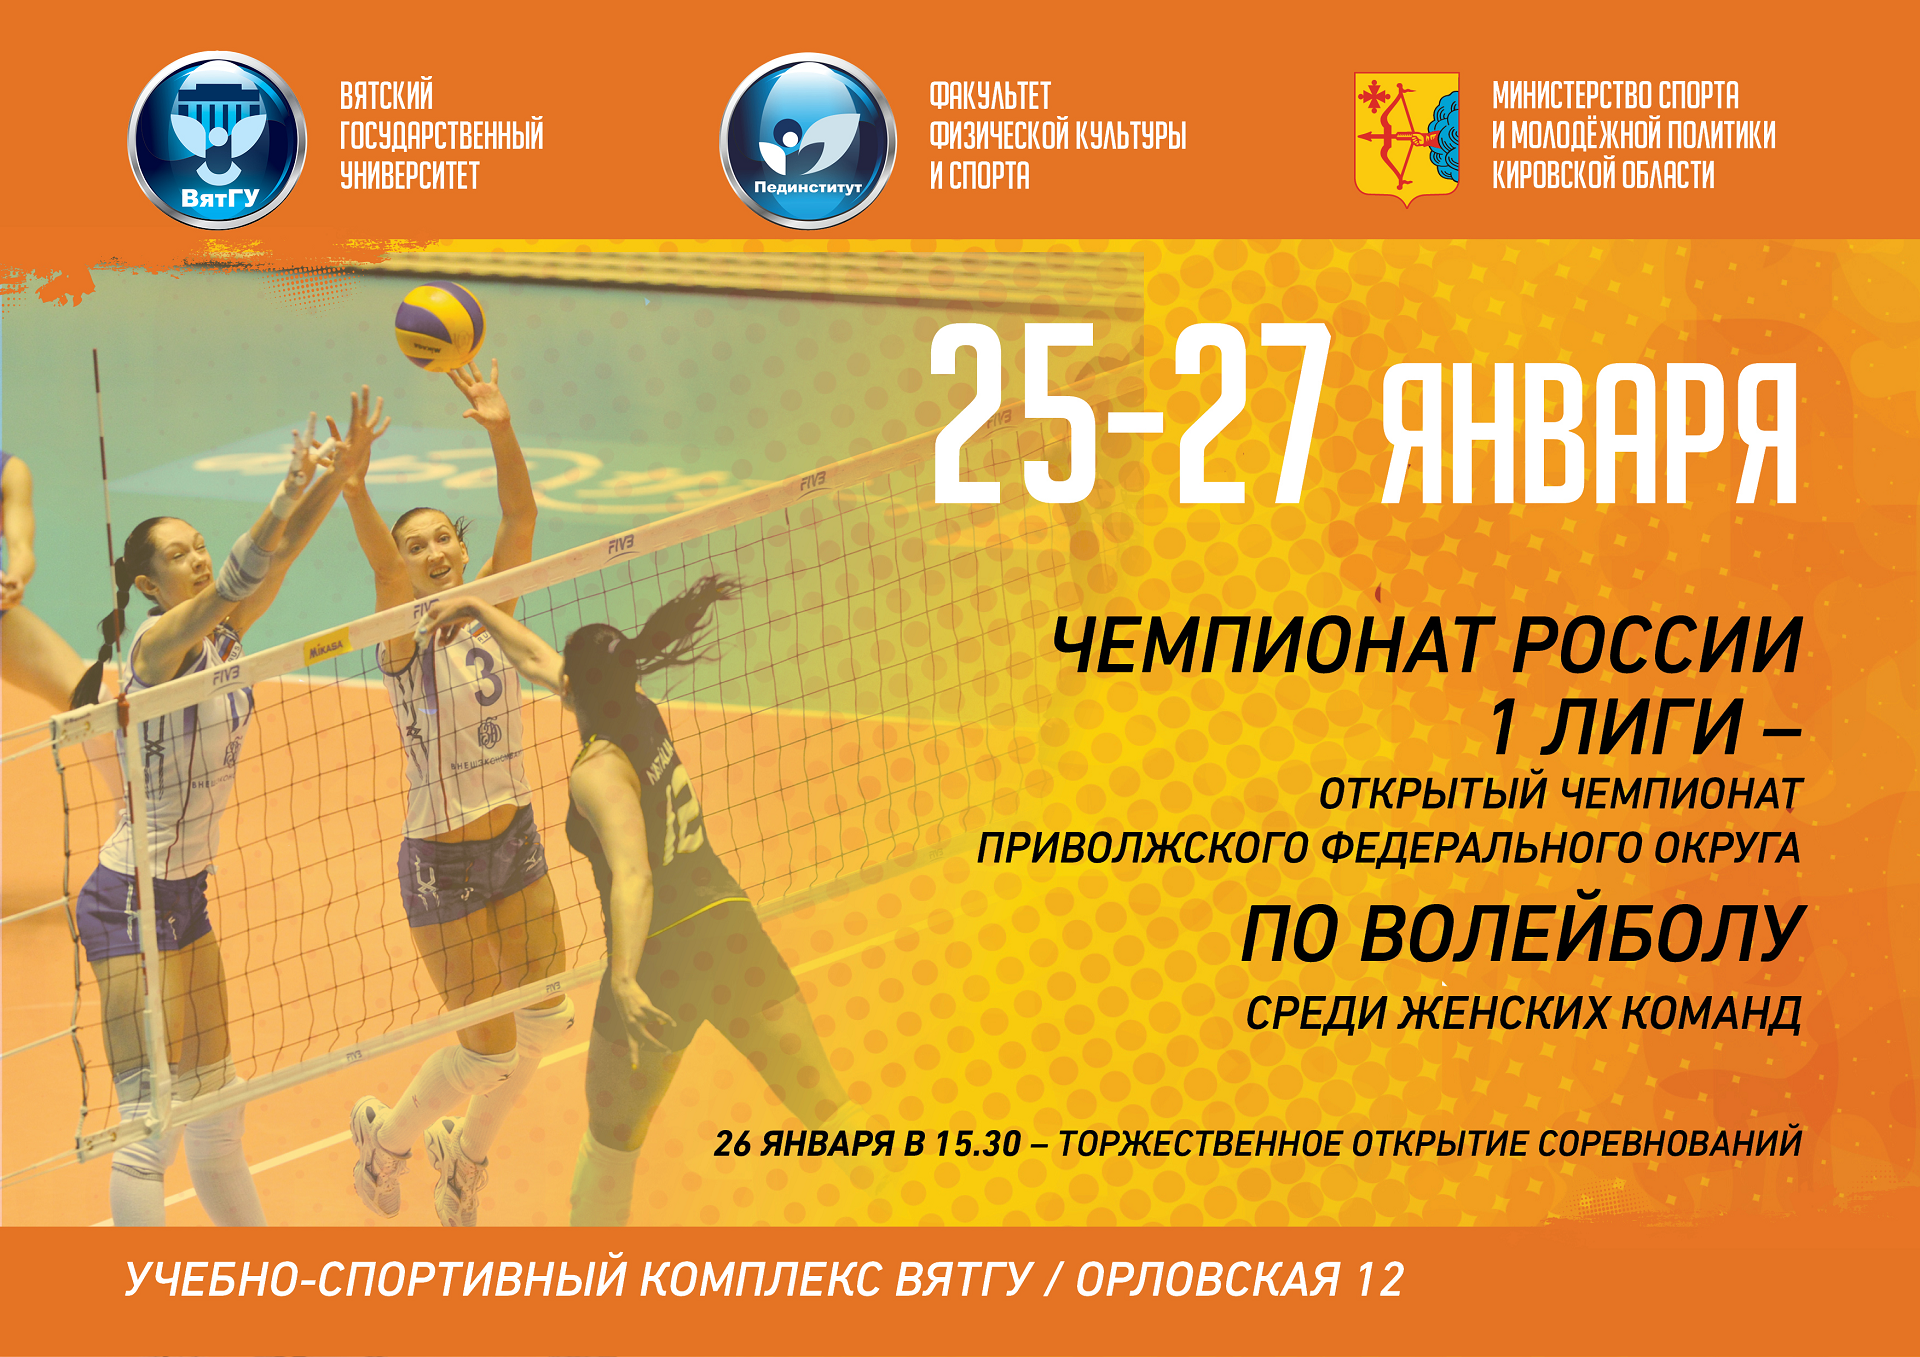 Открытый чемпионат Приволжского федерального округа по волейболу среди женских команд в ВятГУ